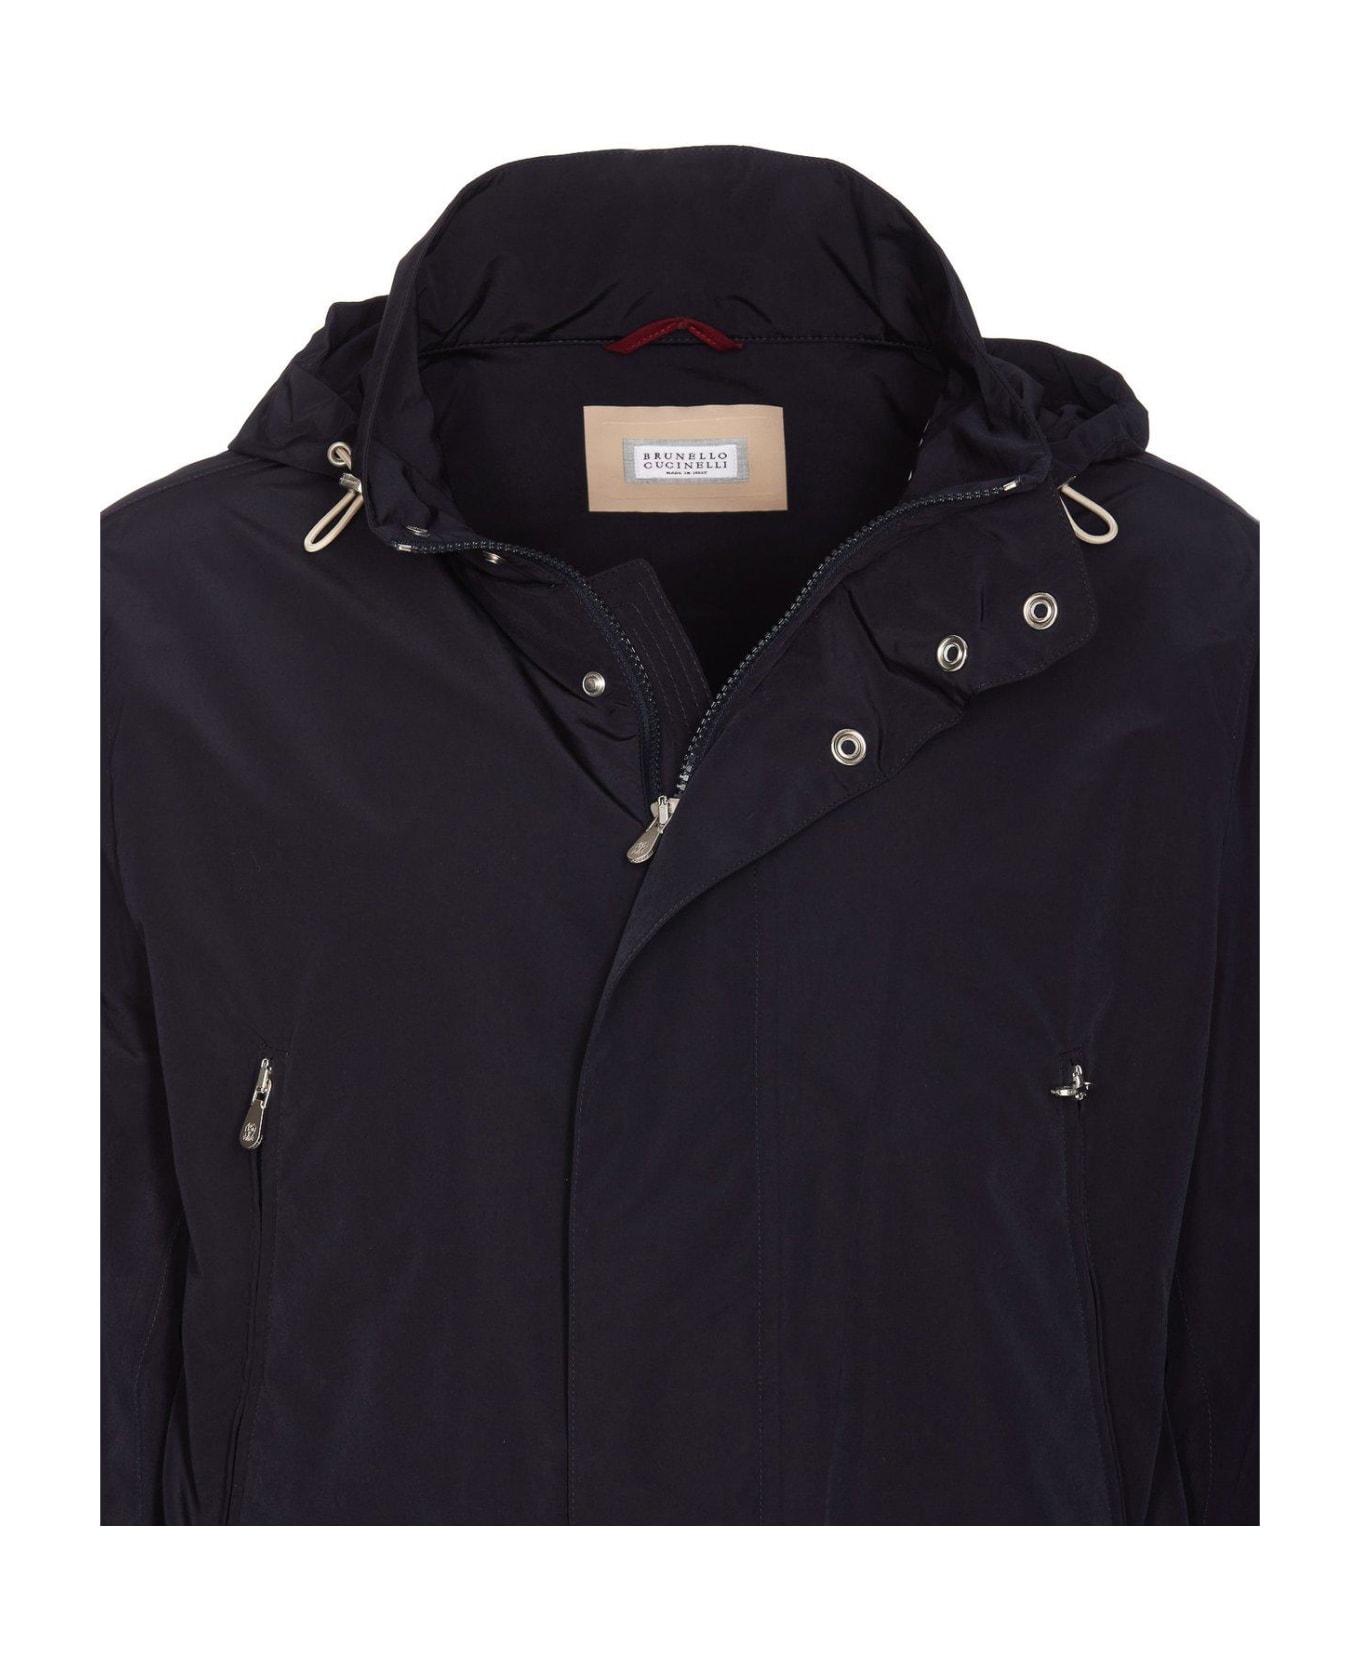 Brunello Cucinelli Zip-up Hooded Jacket - NAVY